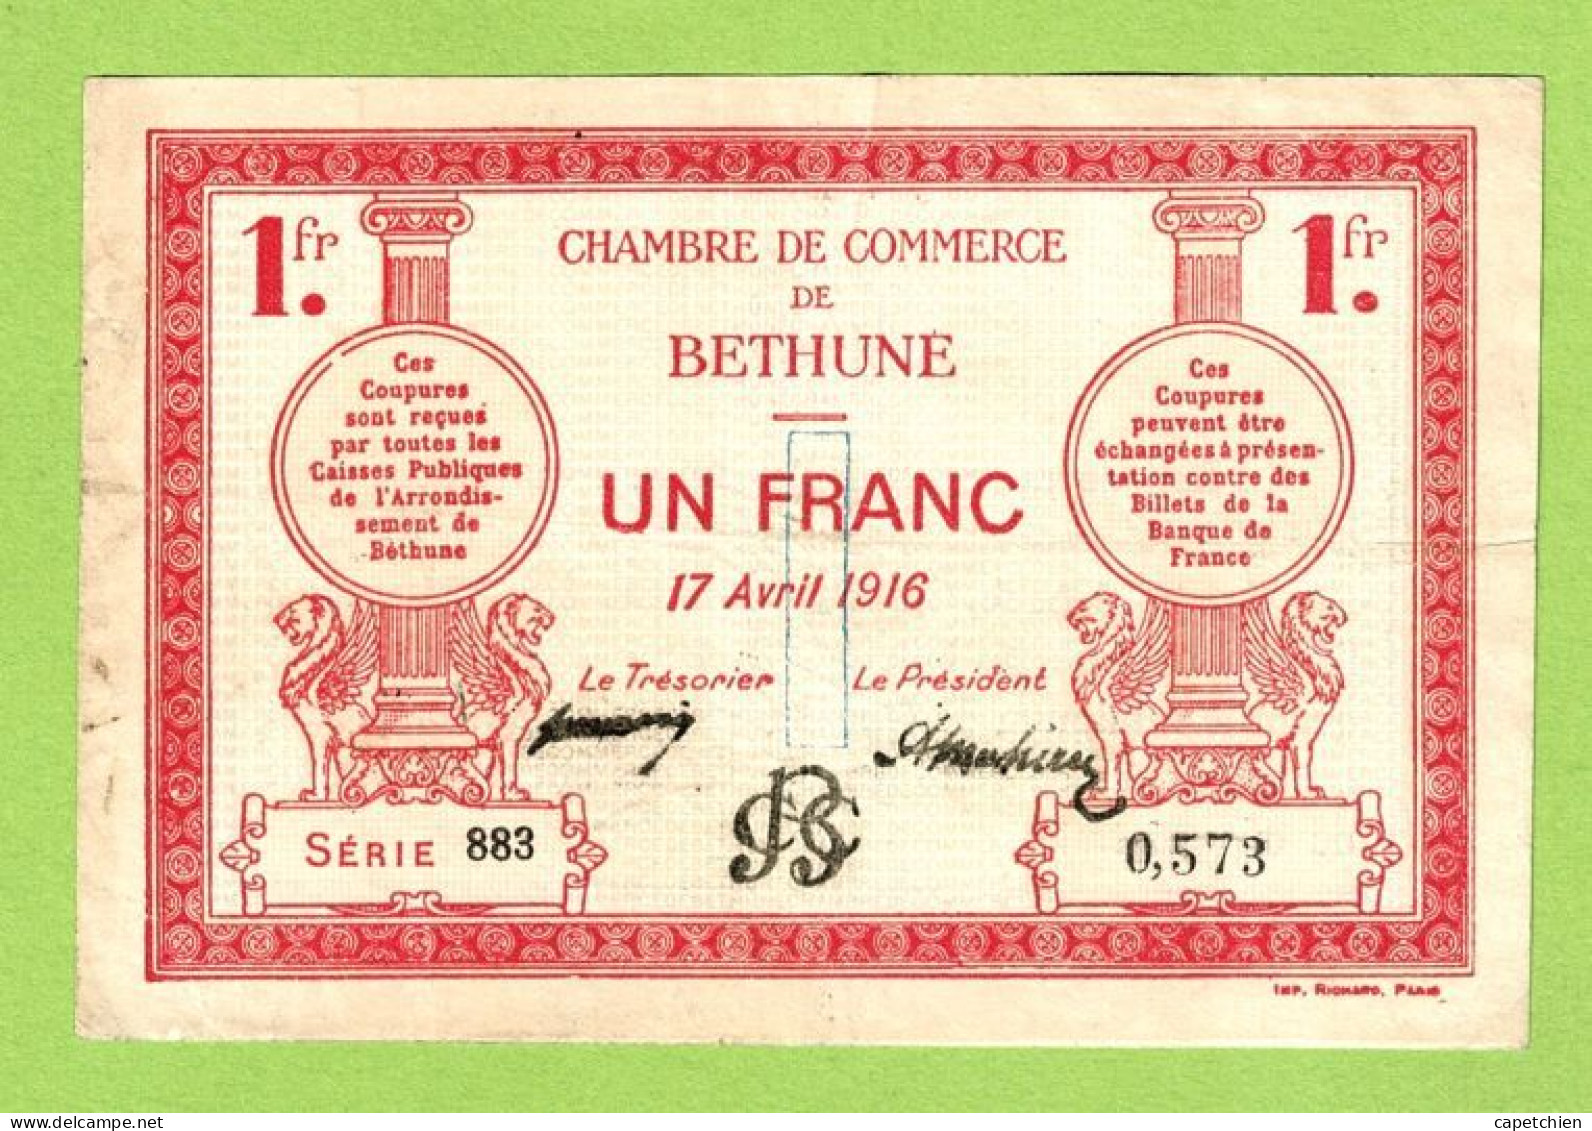 FRANCE / CHAMBRE DE COMMERCE / BETHUNE / 1 FRANC/ 17 AVRIL 1916 / SERIE 883  / N° 0573 - Camera Di Commercio